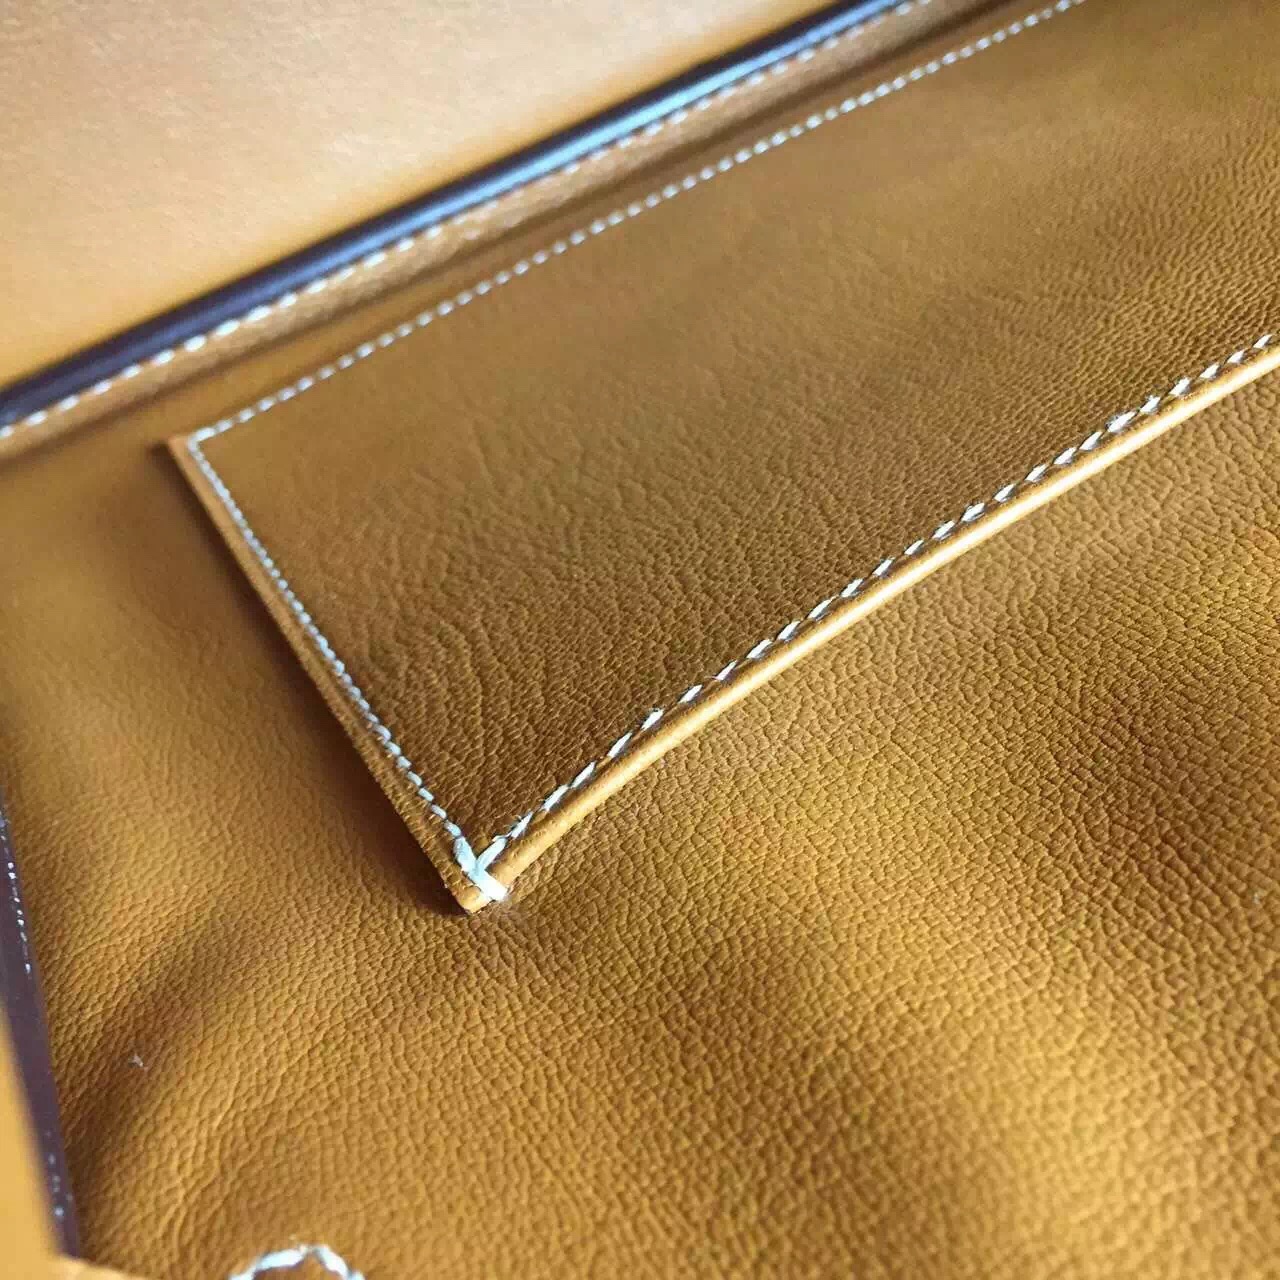 On Sale Hermes CK37 Gold Epsom Leather Birkin Bag30CM Gold Hardware